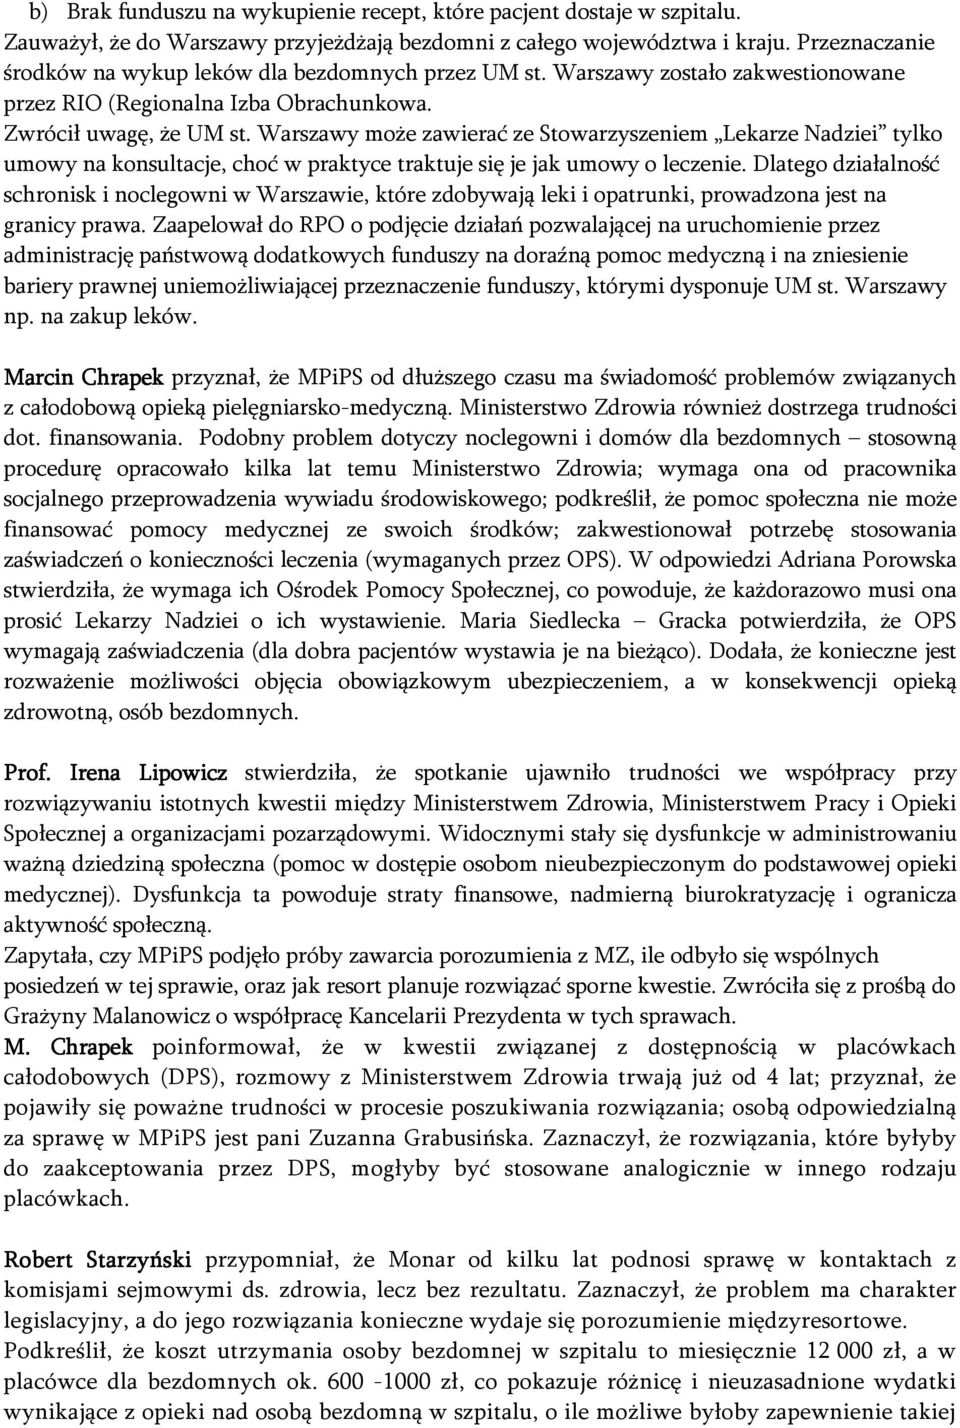 Warszawy może zawierać ze Stowarzyszeniem Lekarze Nadziei tylko umowy na konsultacje, choć w praktyce traktuje się je jak umowy o leczenie.